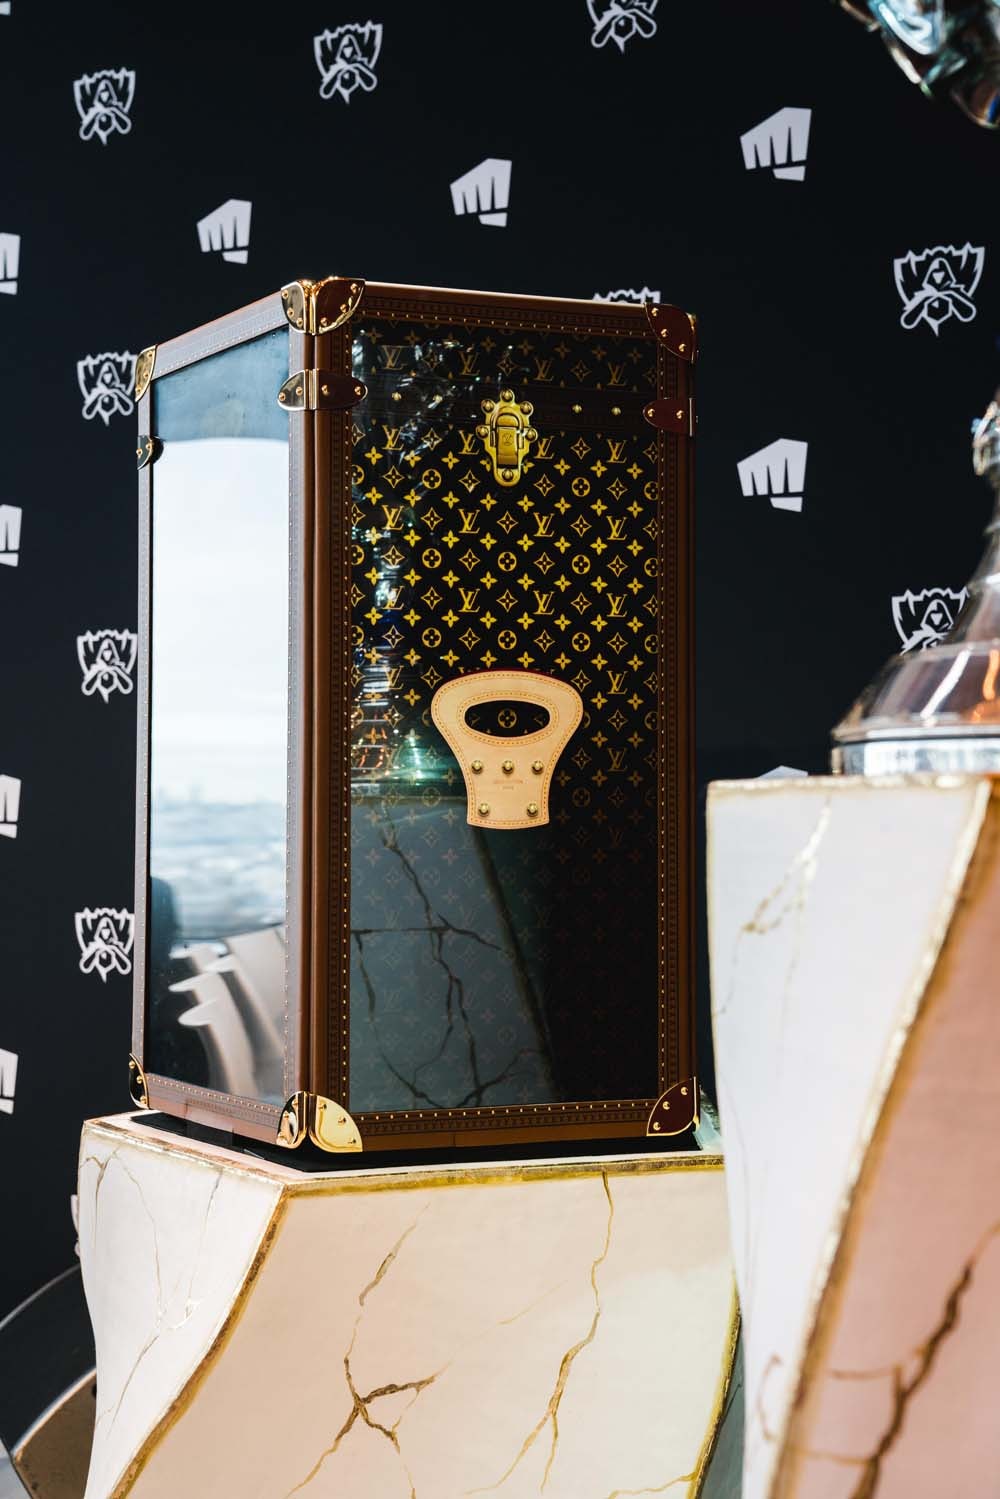 Louis Vuitton 'League of Legends' Trophy Trunk Case